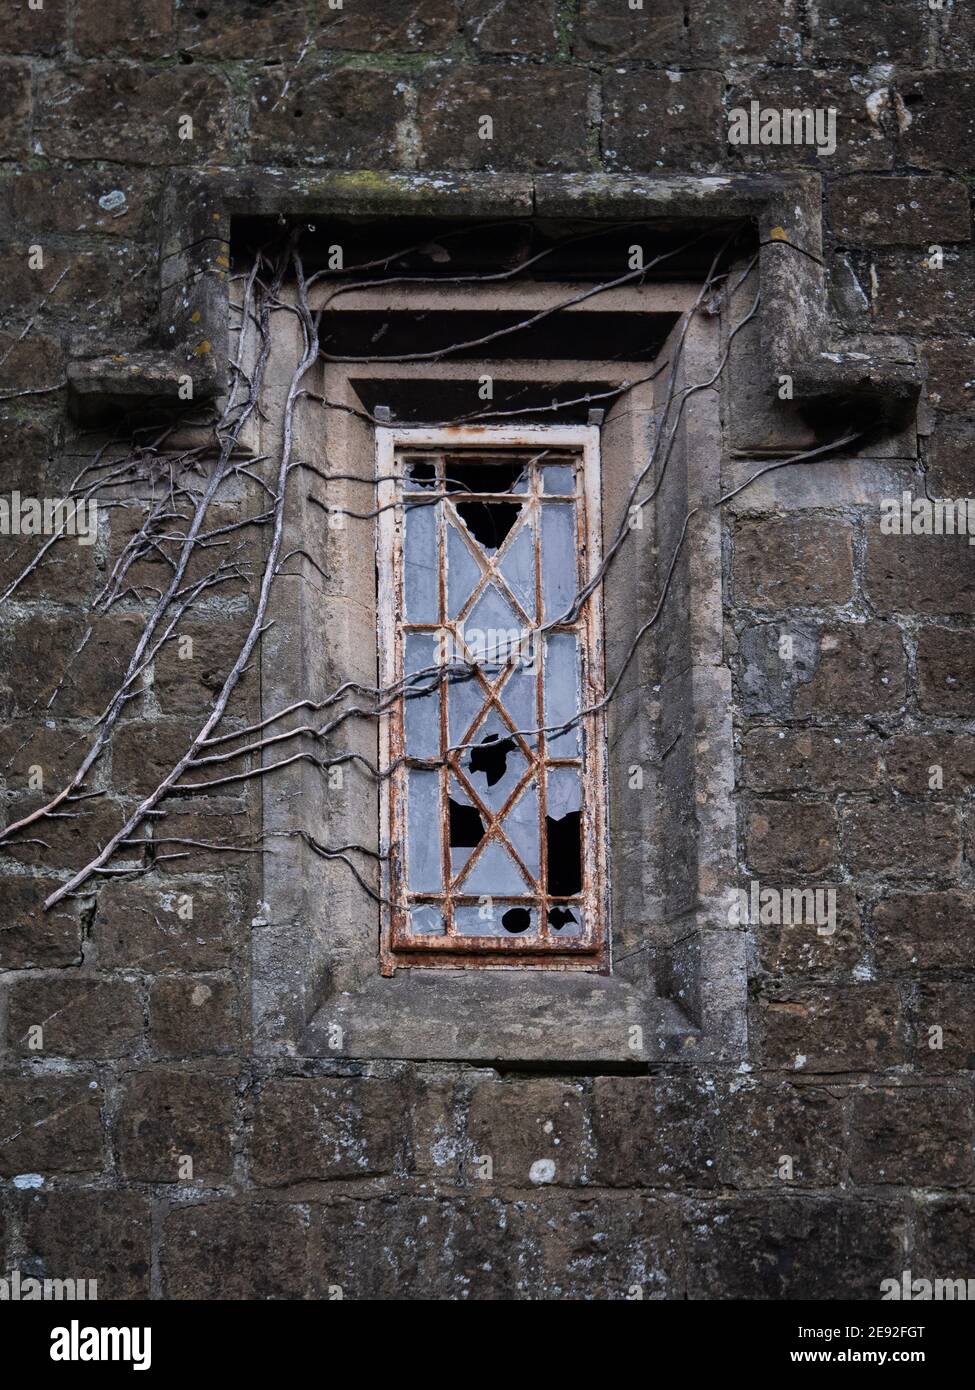 Eine dunkle, launische Aufnahme von zerbrochenen Fensterscheiben in alten Metallrahmen Fenster mit Efeu Wurzeln und Ästen über die Ausbreitung. Stockfoto